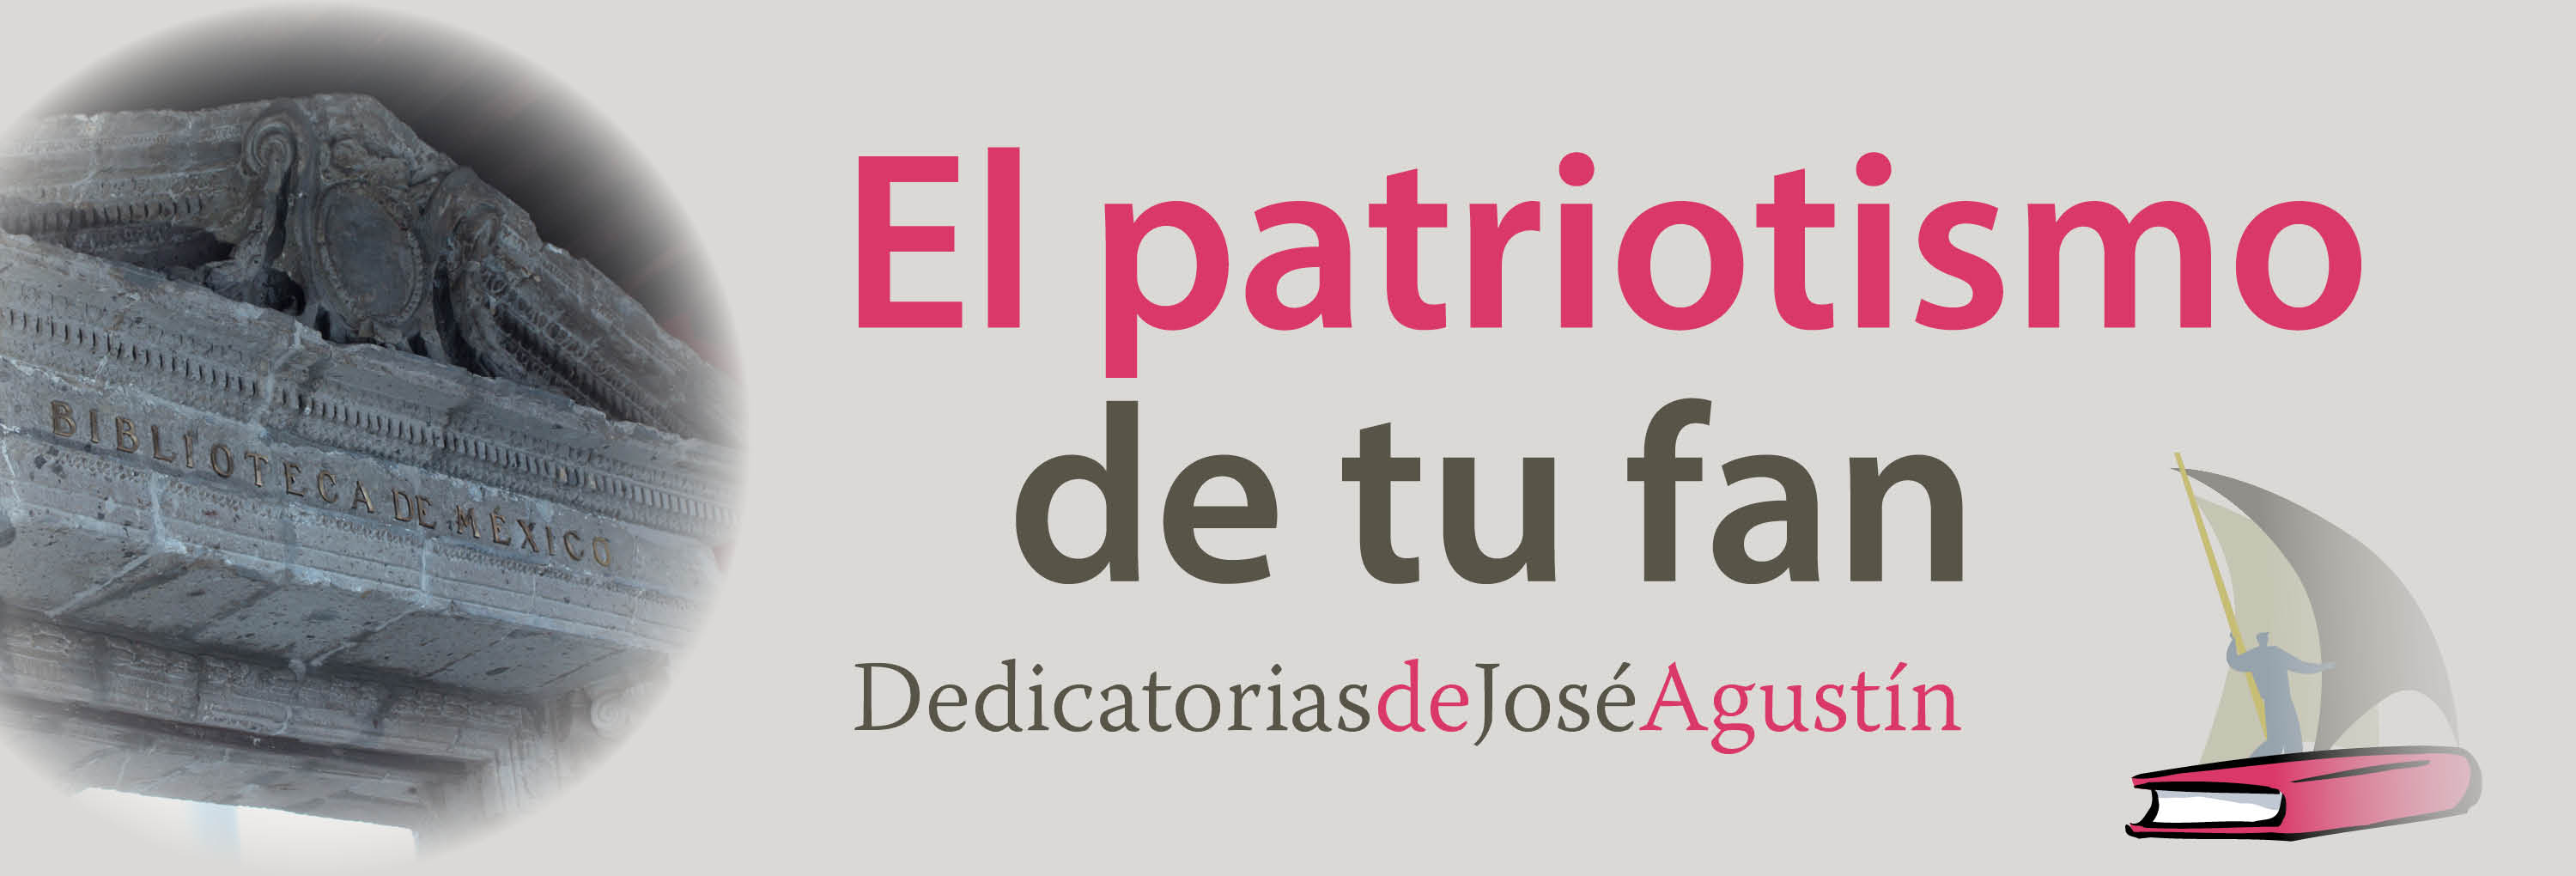 Banner del texto El patriotismo de tu fan